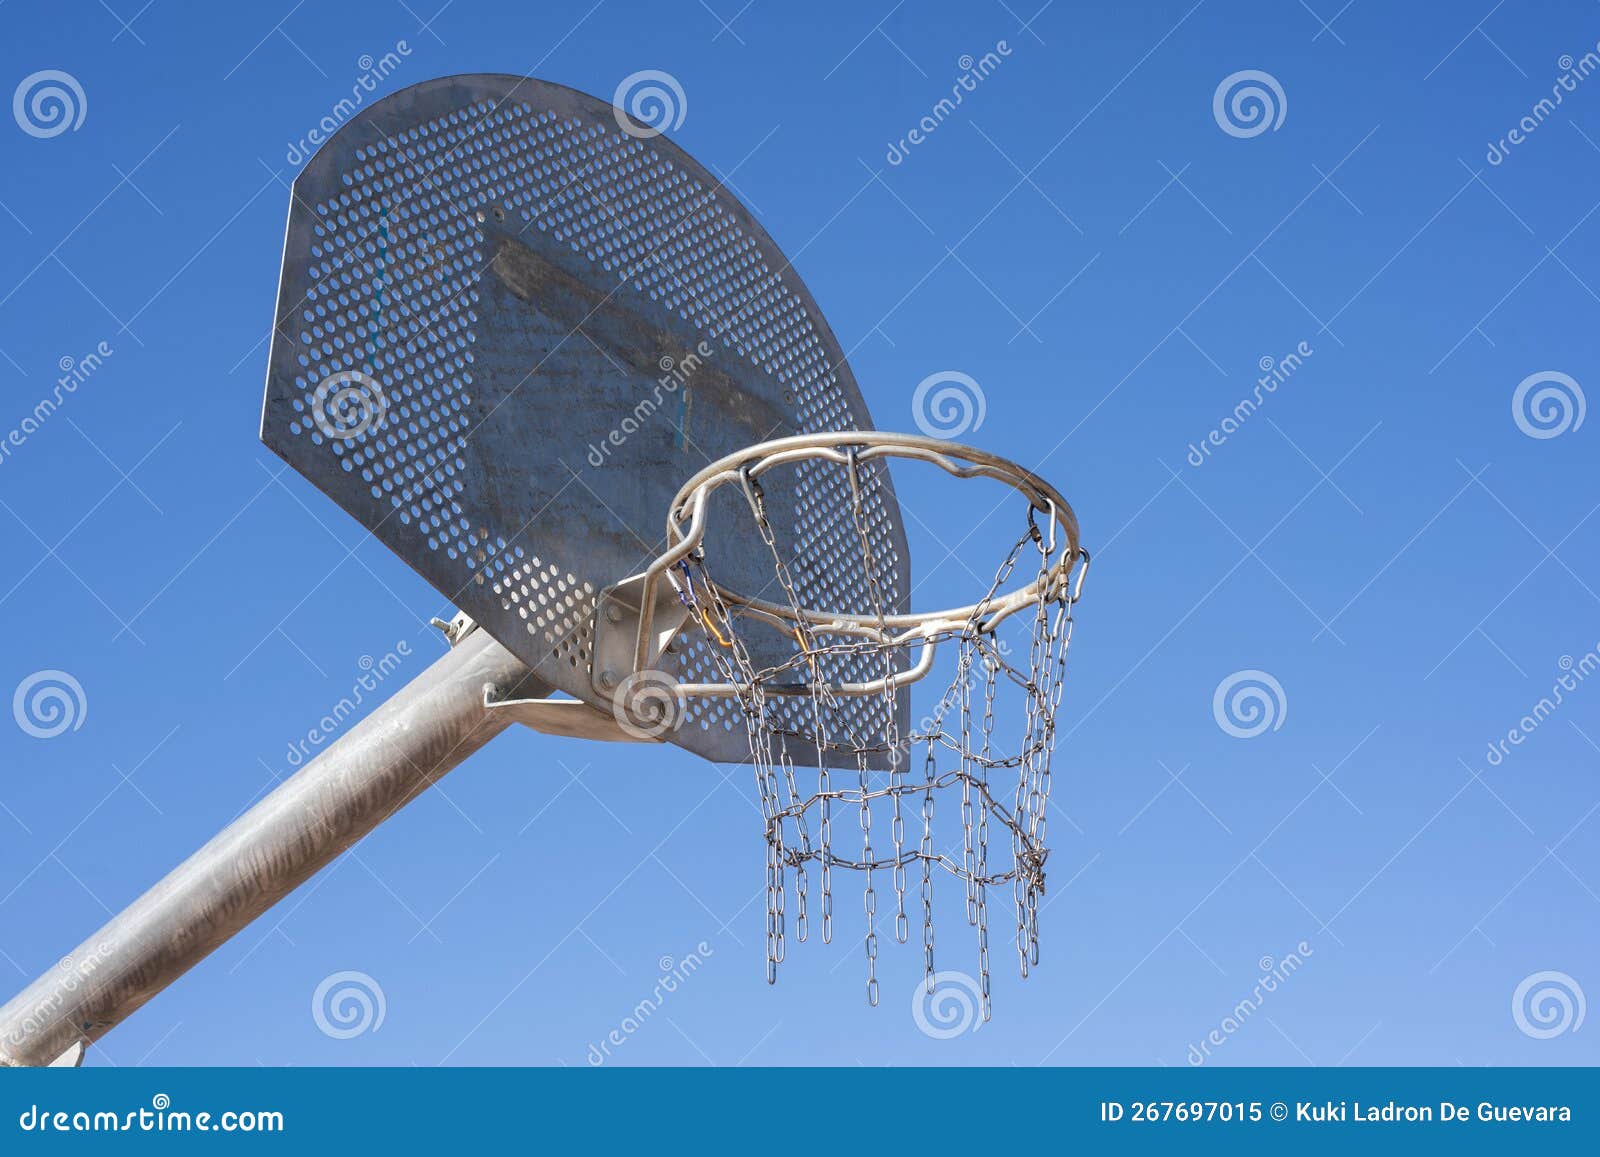 basketball basket with backboard and metal net